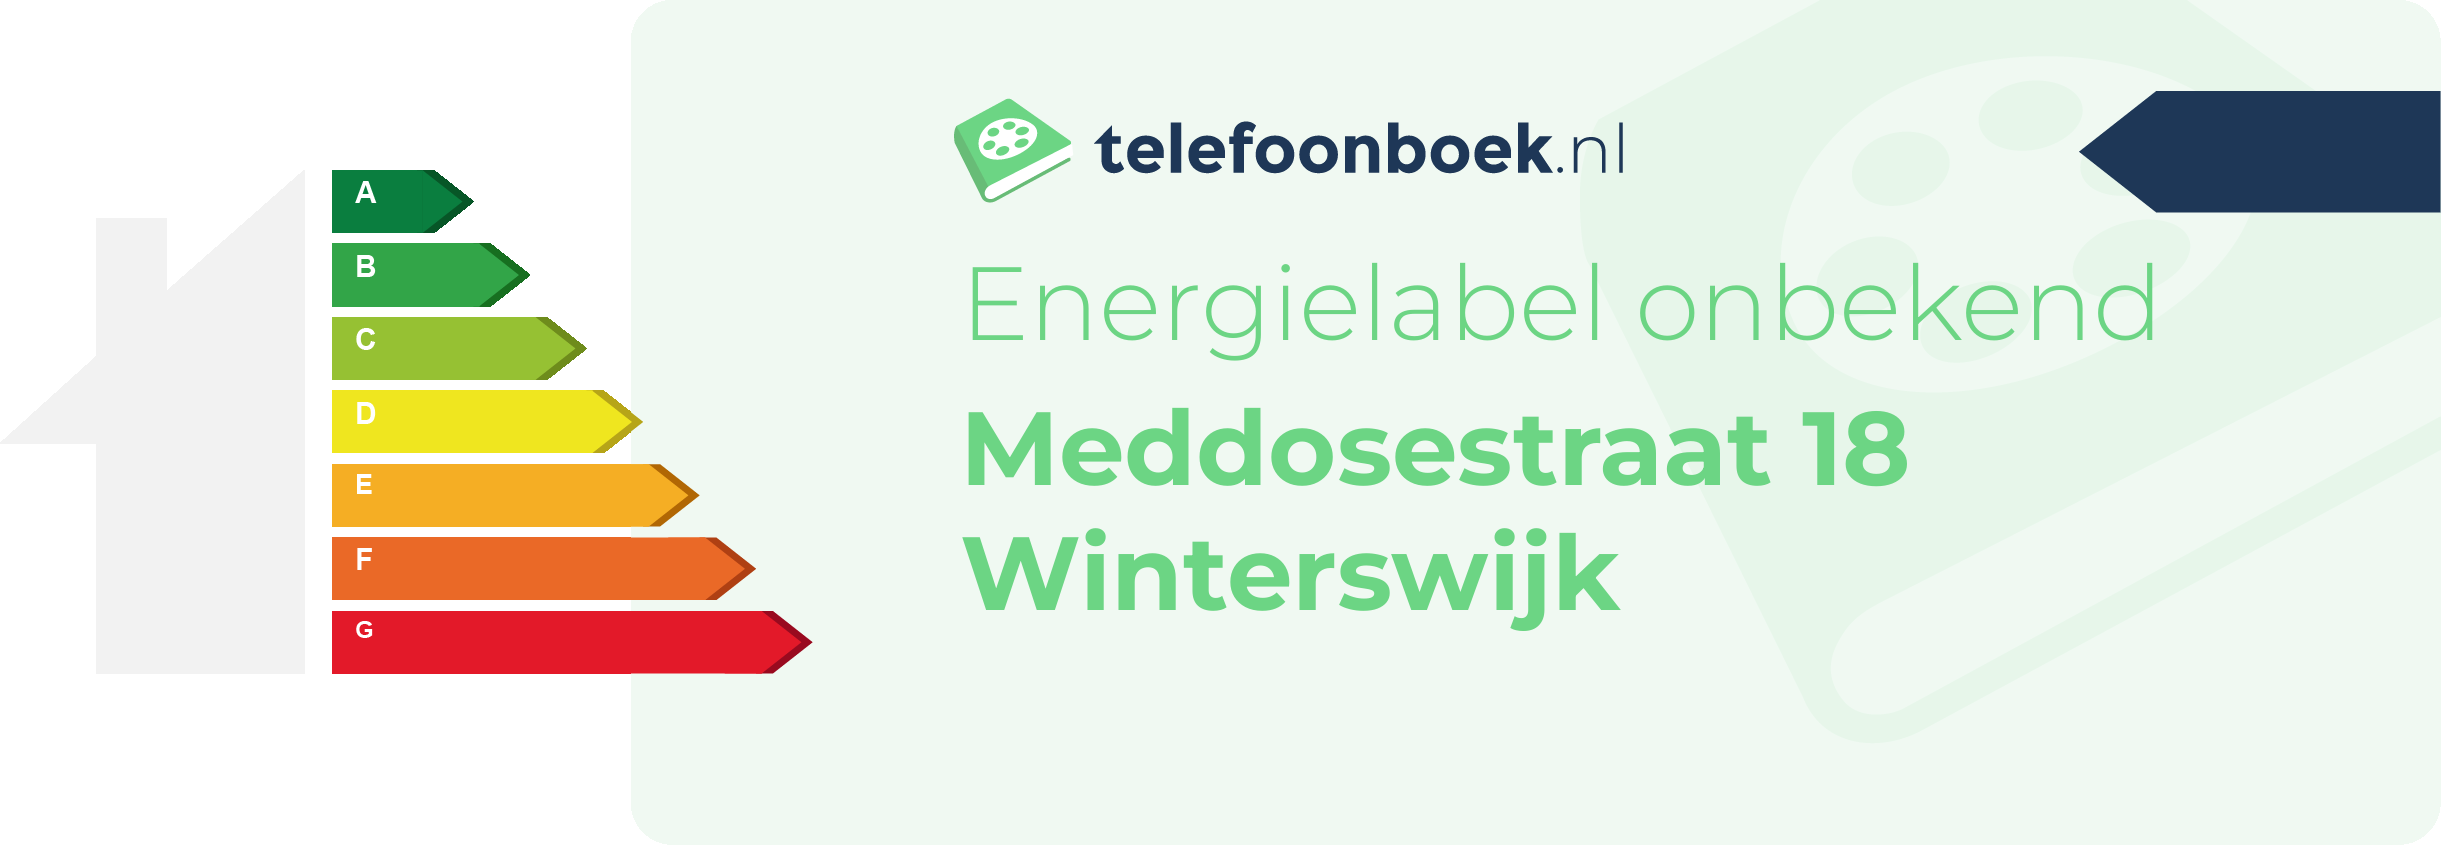 Energielabel Meddosestraat 18 Winterswijk